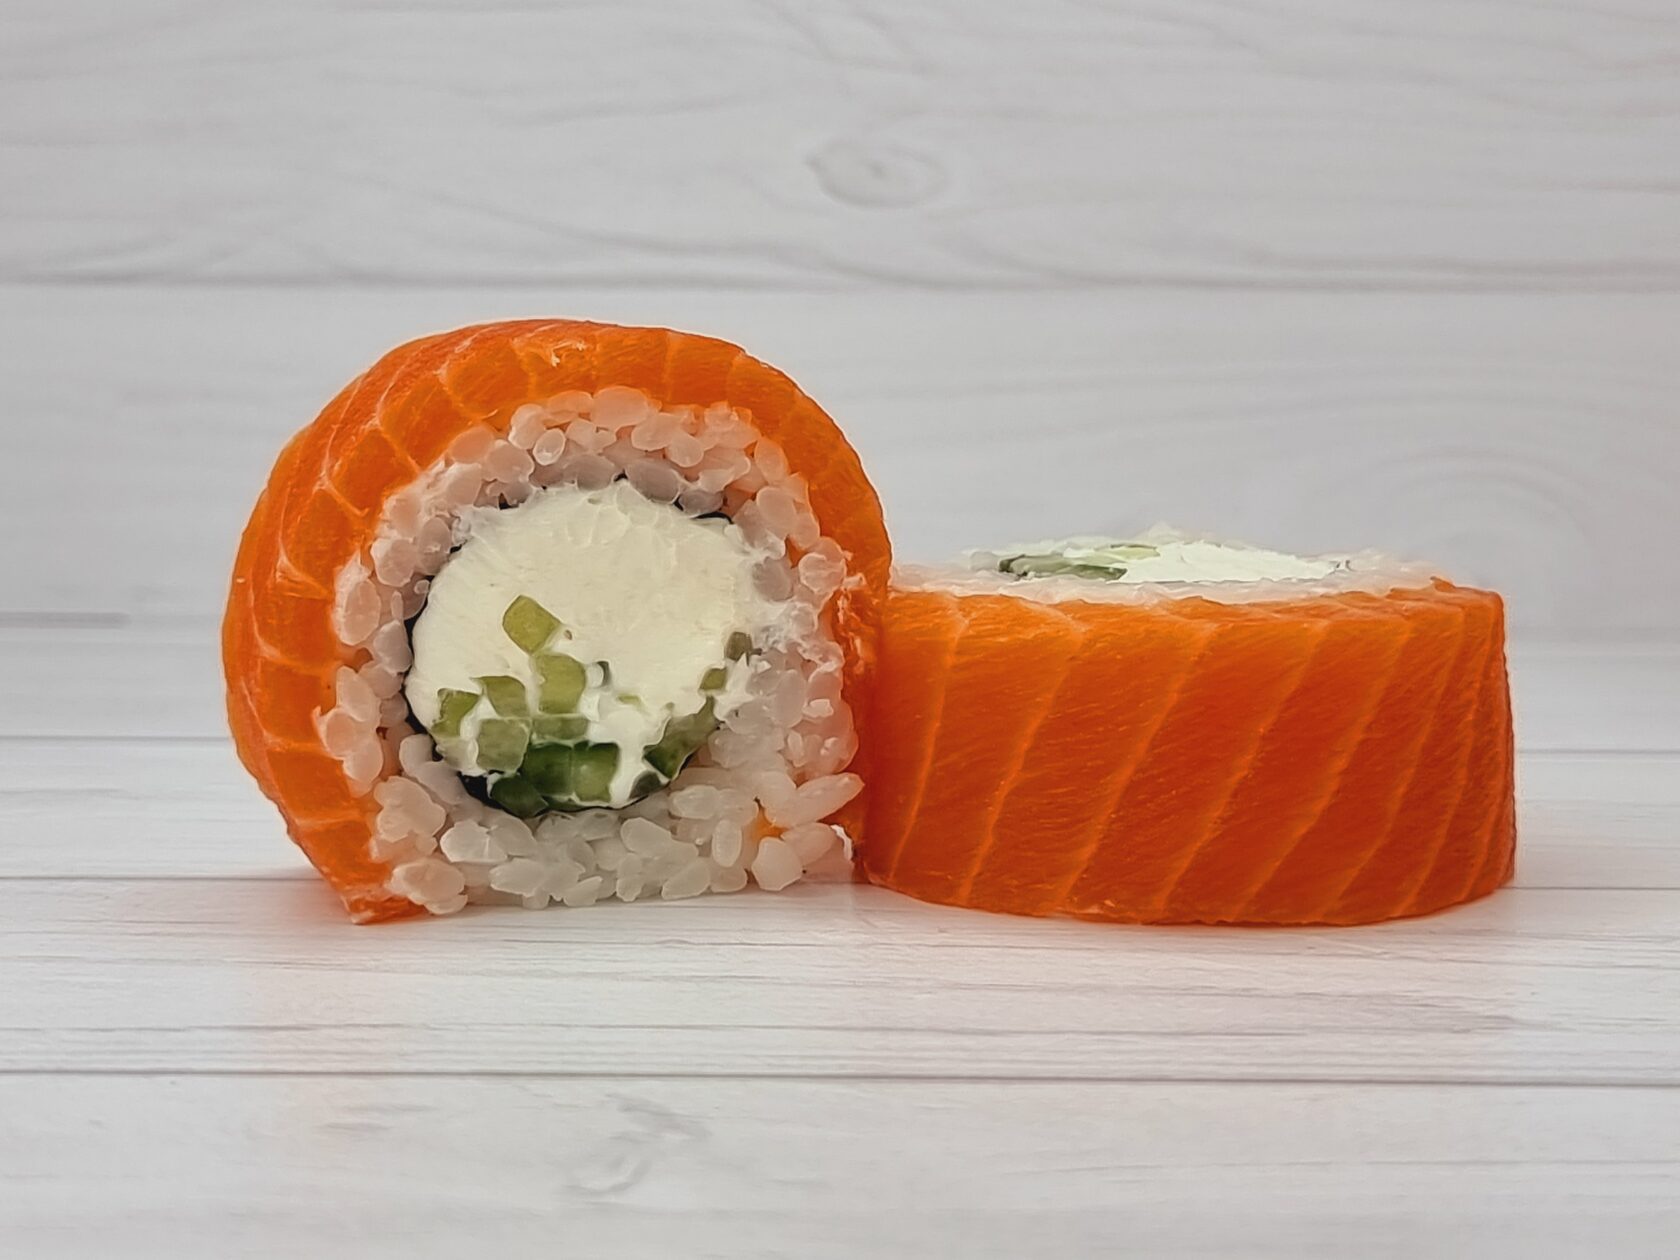 Заказать суши в краснодаре с бесплатной доставкой тануки фото 117